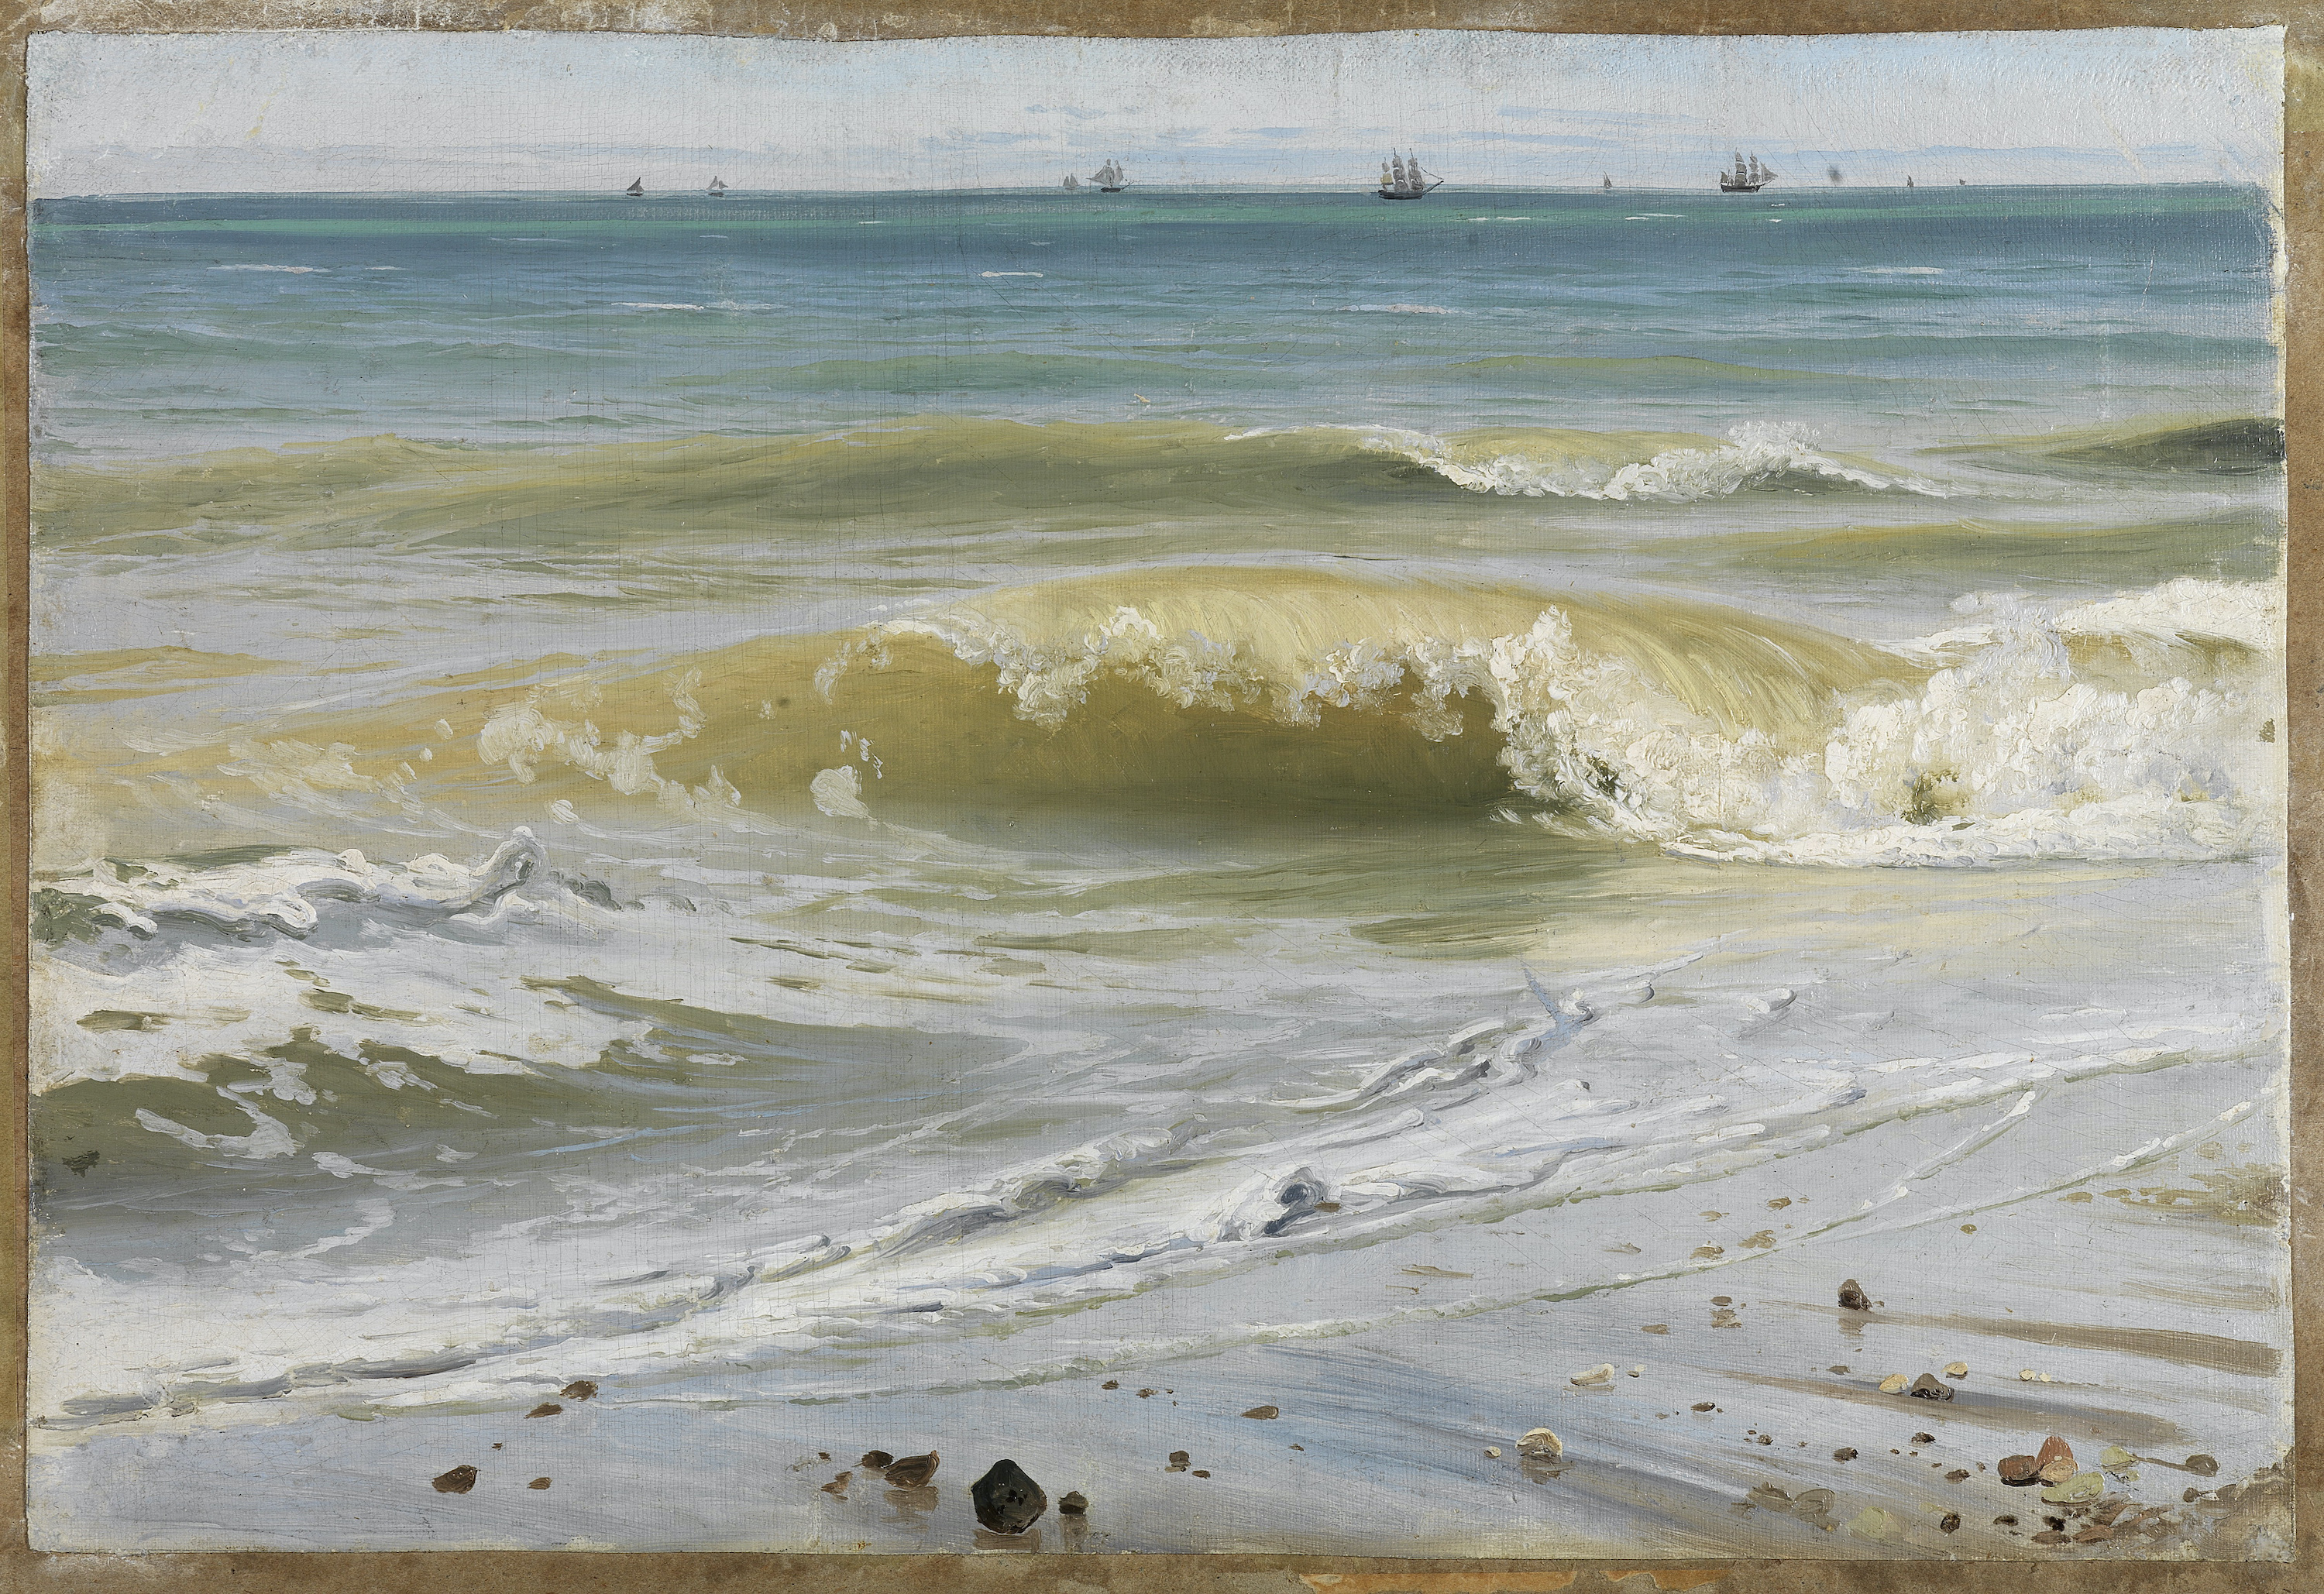 破浪前进的船只 by 约翰 威廉 希尔默 - 1836 - 30,5 x 43,4 cm 